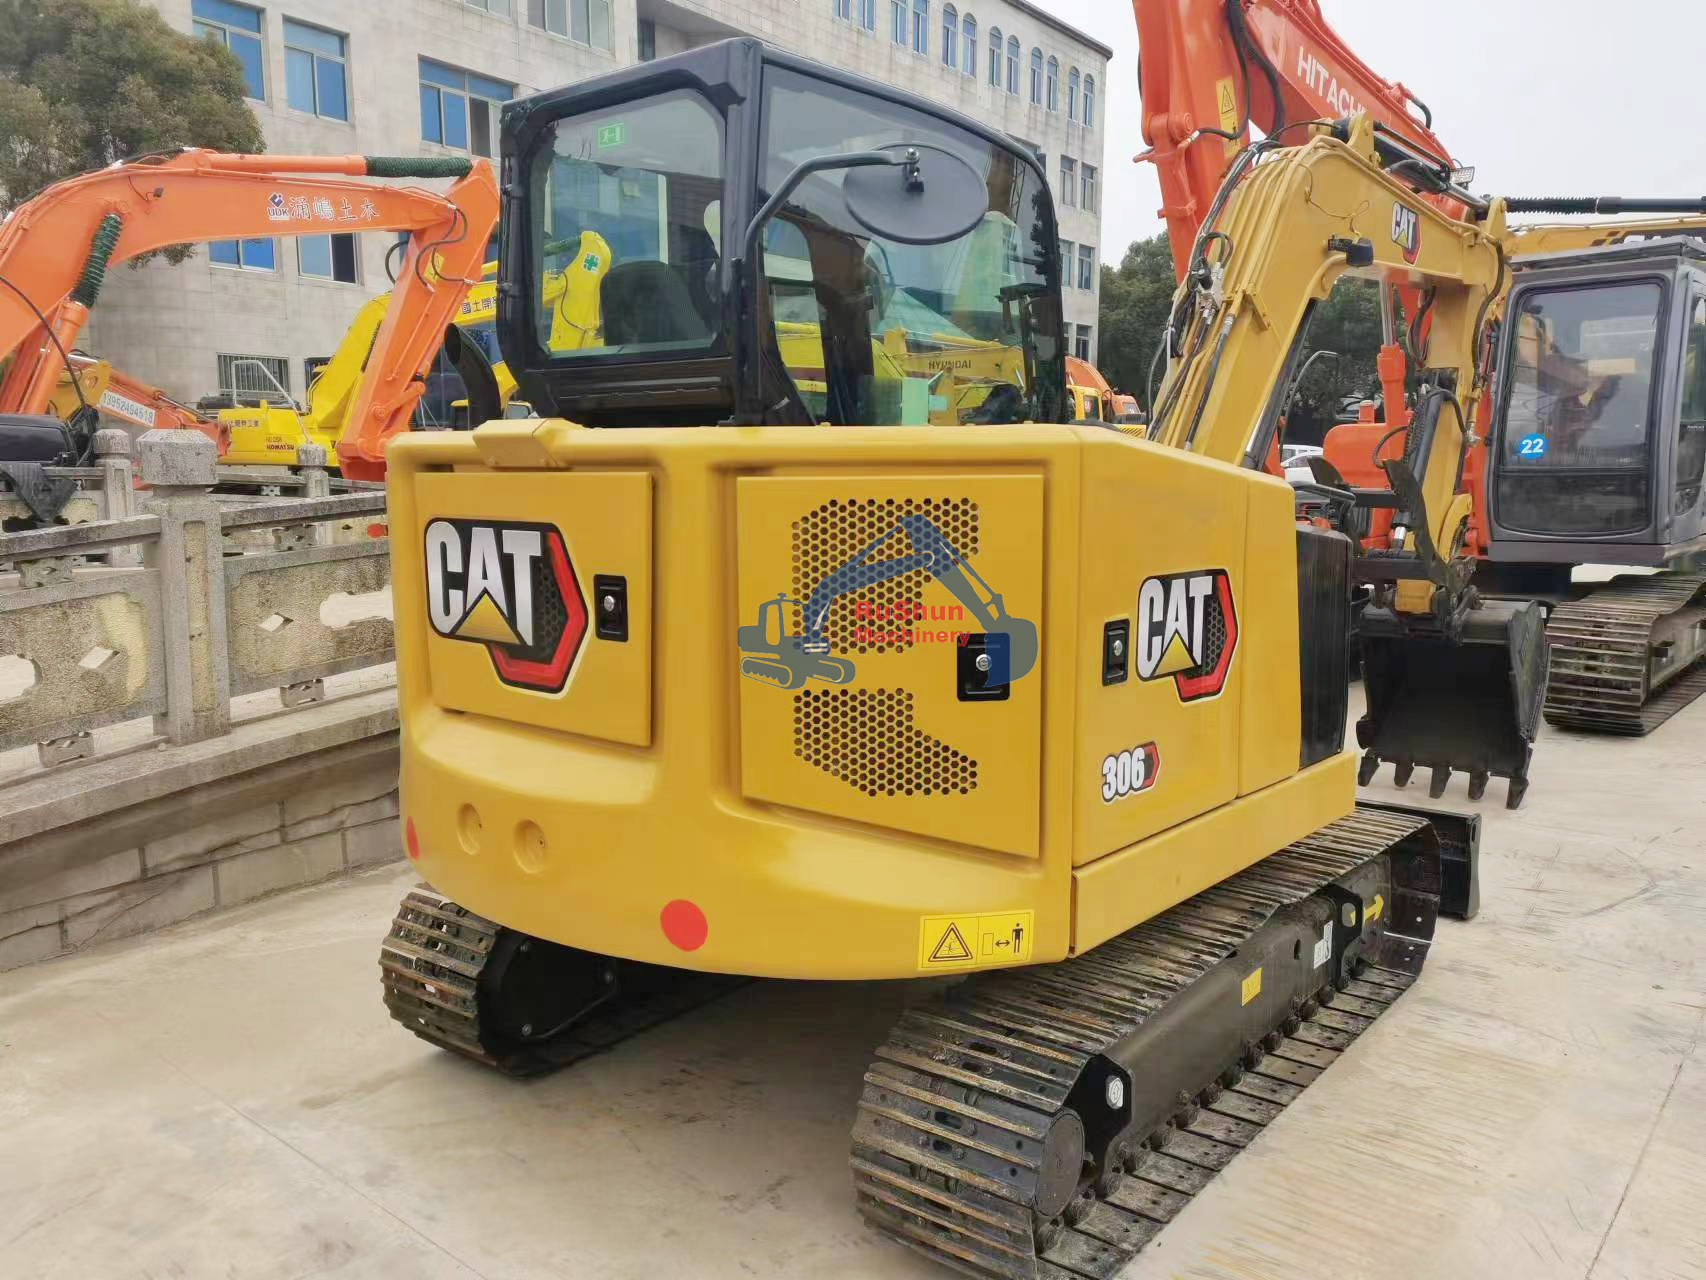 Used CAT 306 Excavator